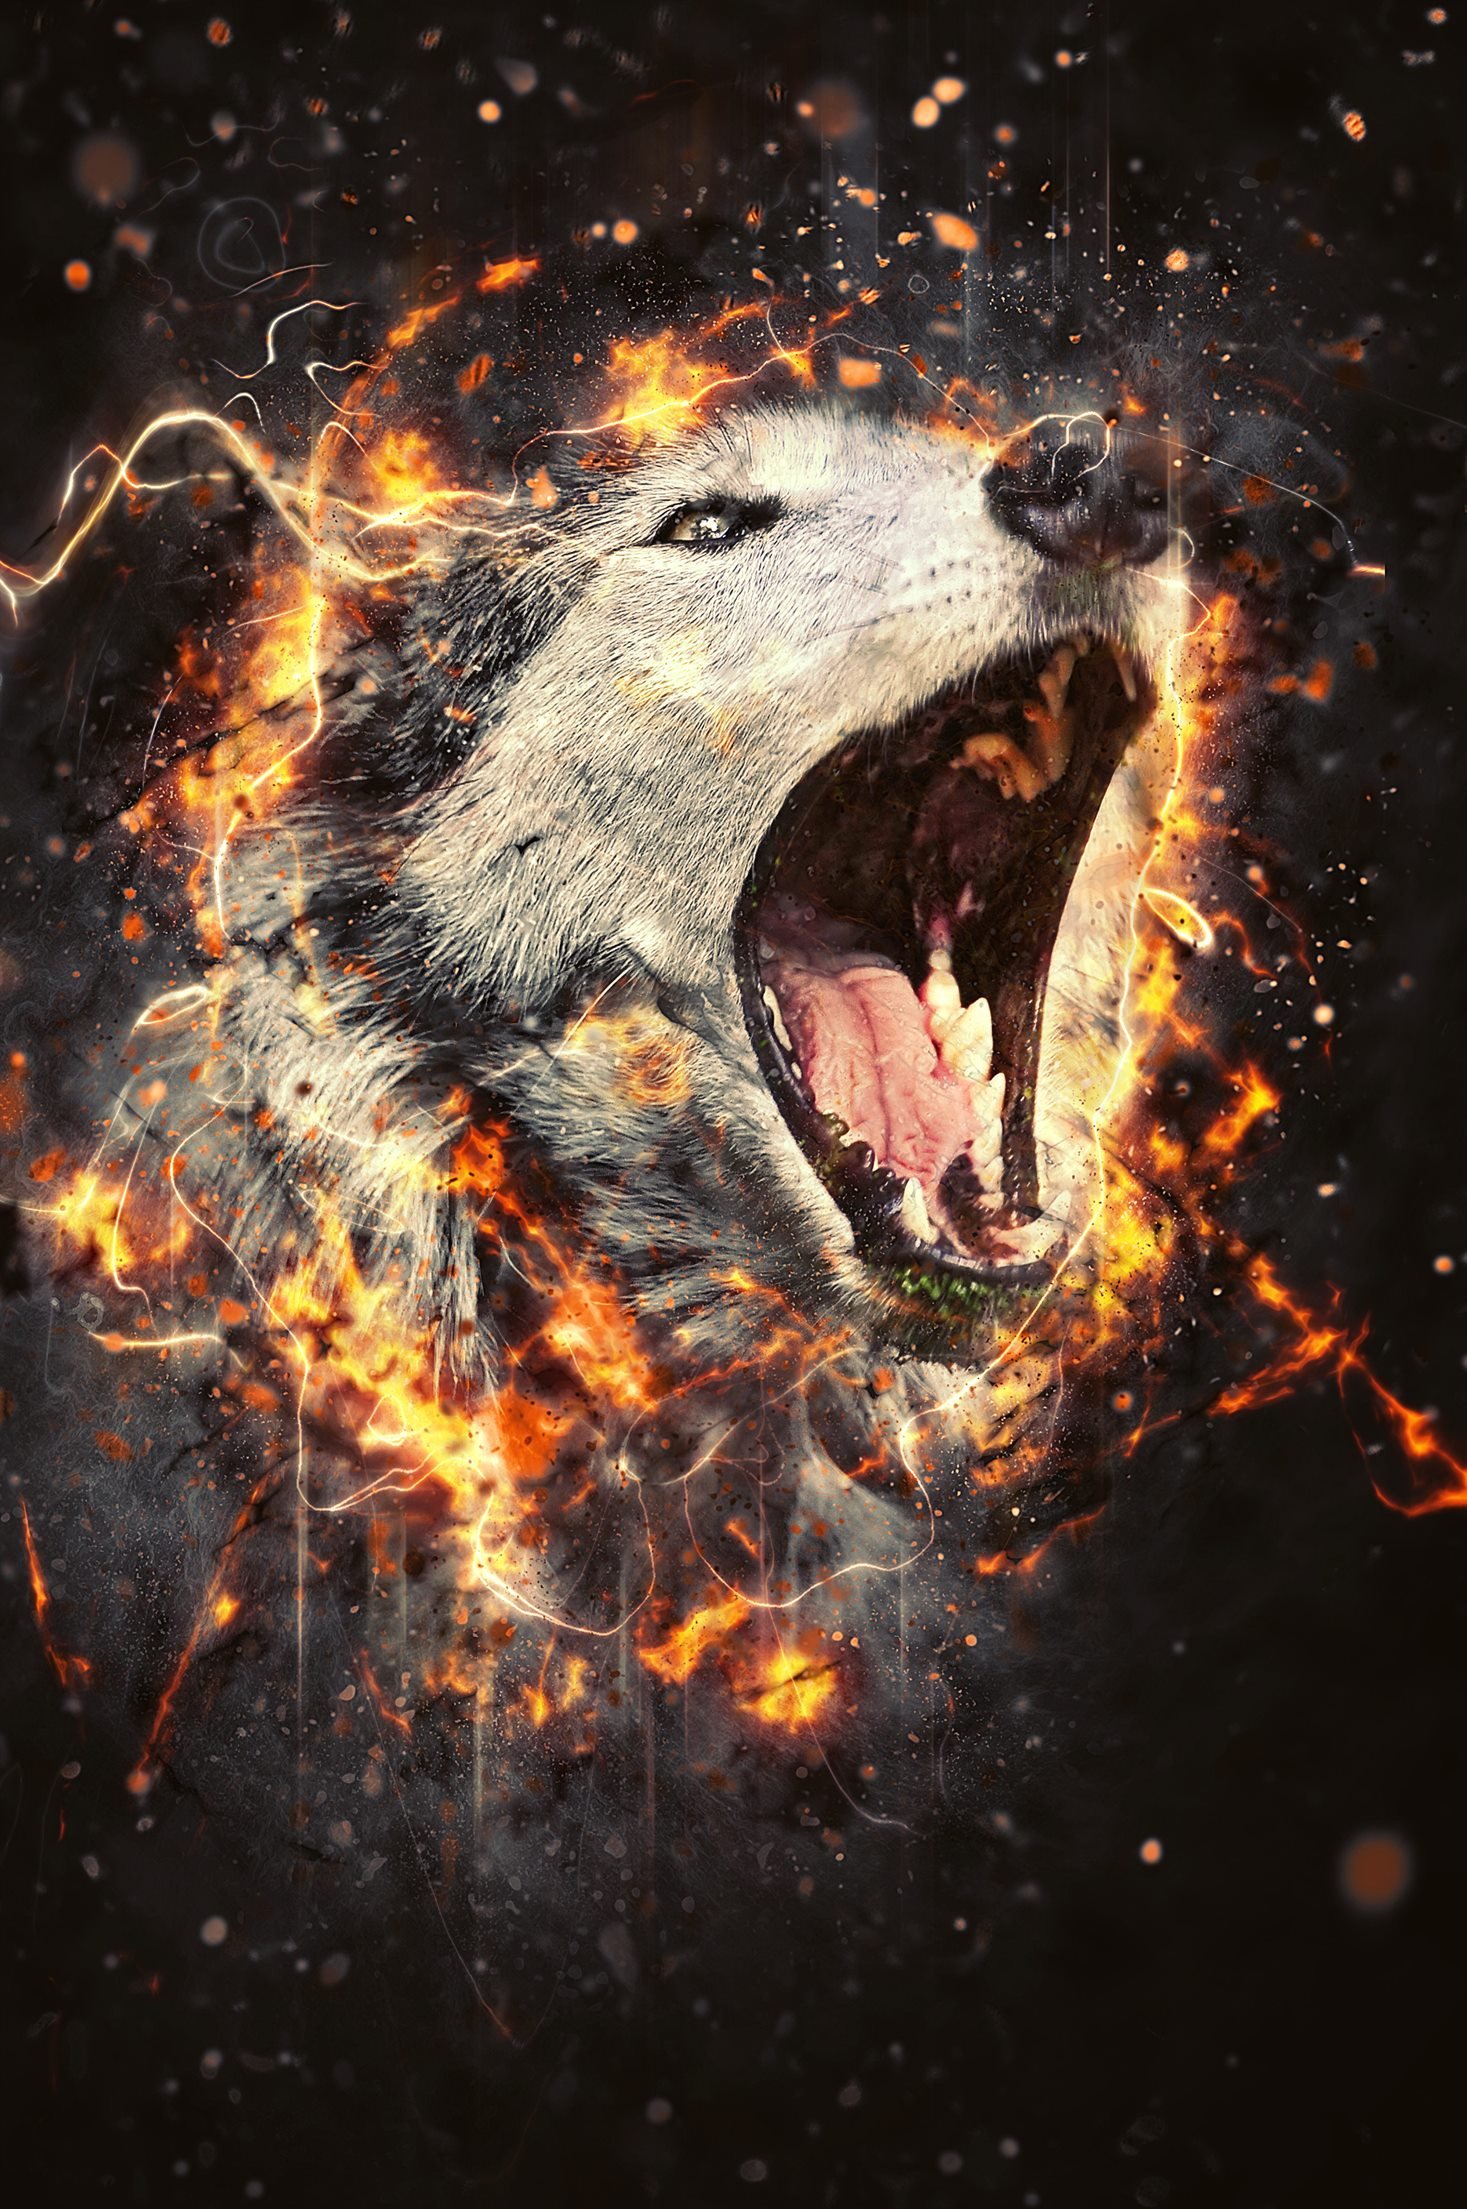 Fury Photoshop Action - wolf image example.